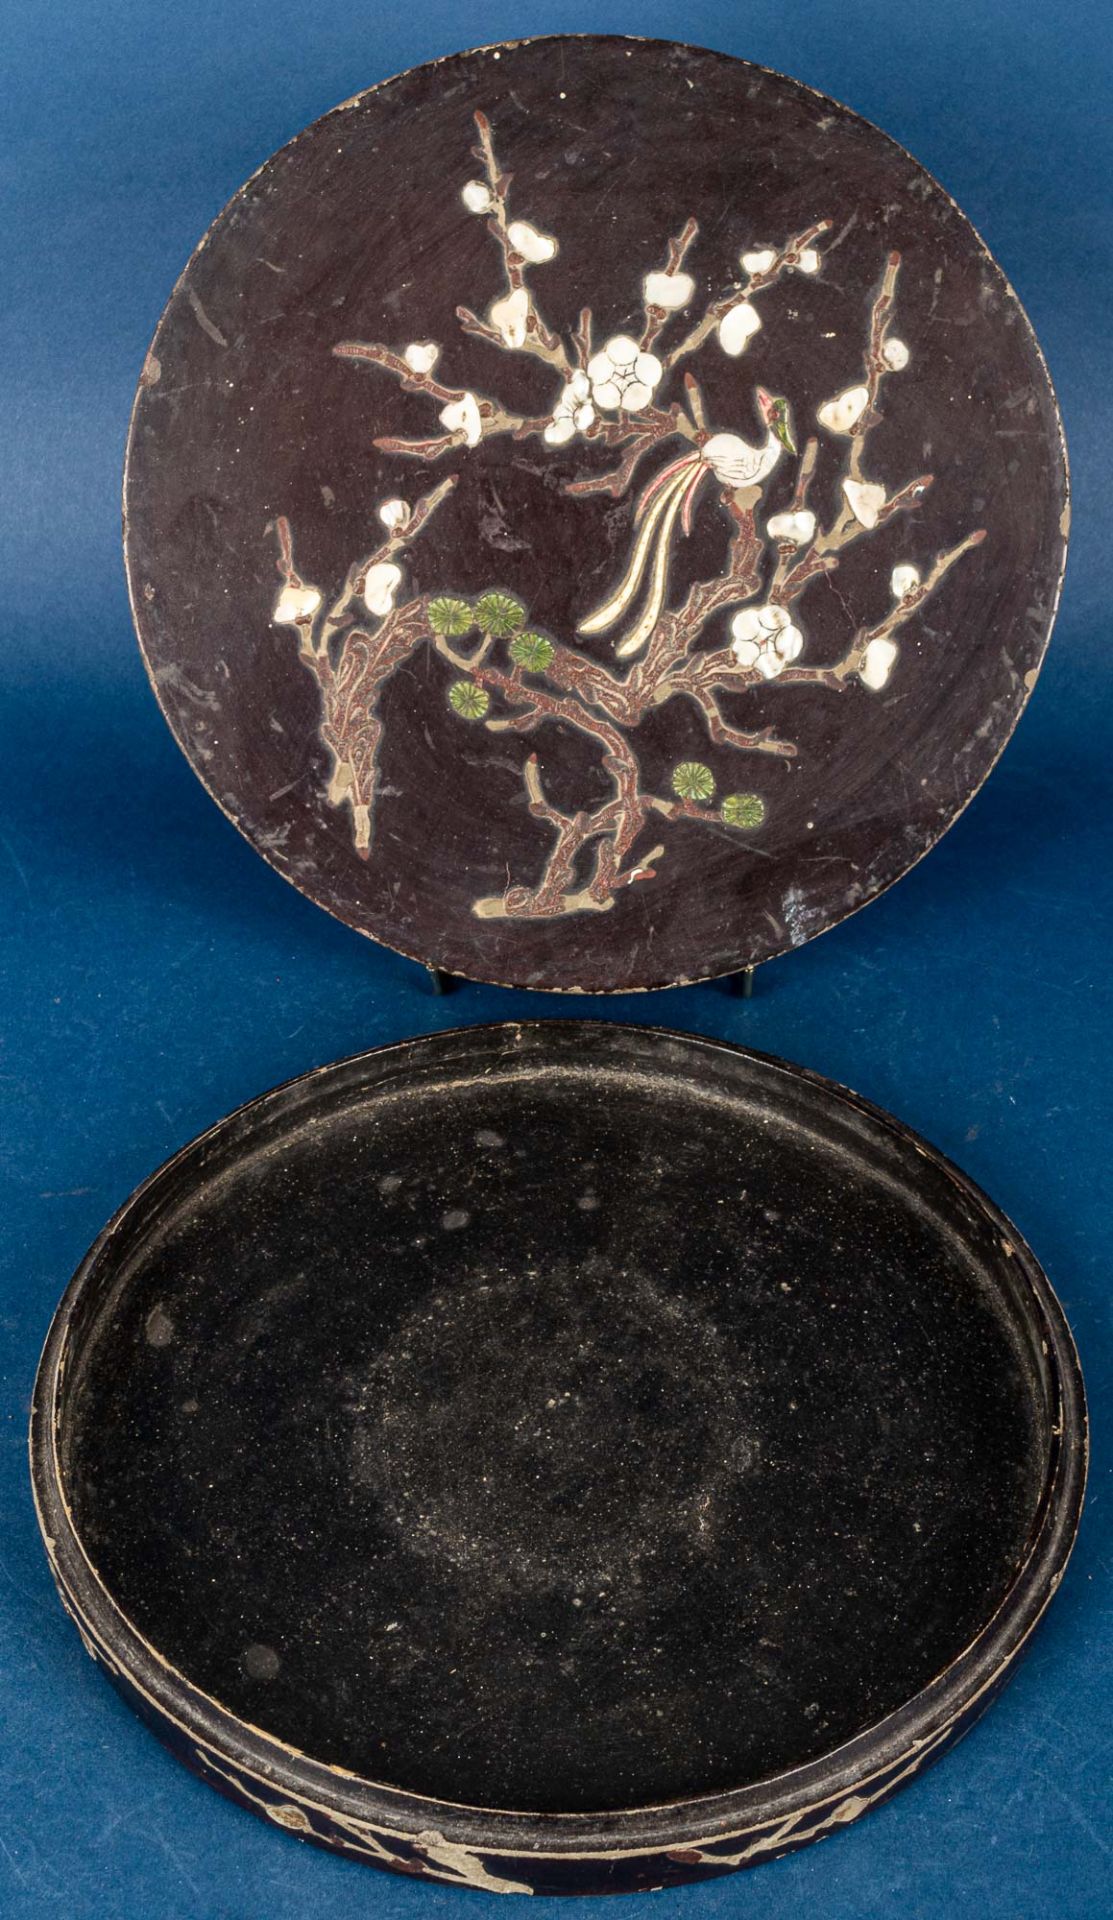 Rundes Vorspeisenset in schwarzem Lackkasten, China Qing - Dynastie, Anfang 20. Jhdt., Durchmesser  - Bild 6 aus 8